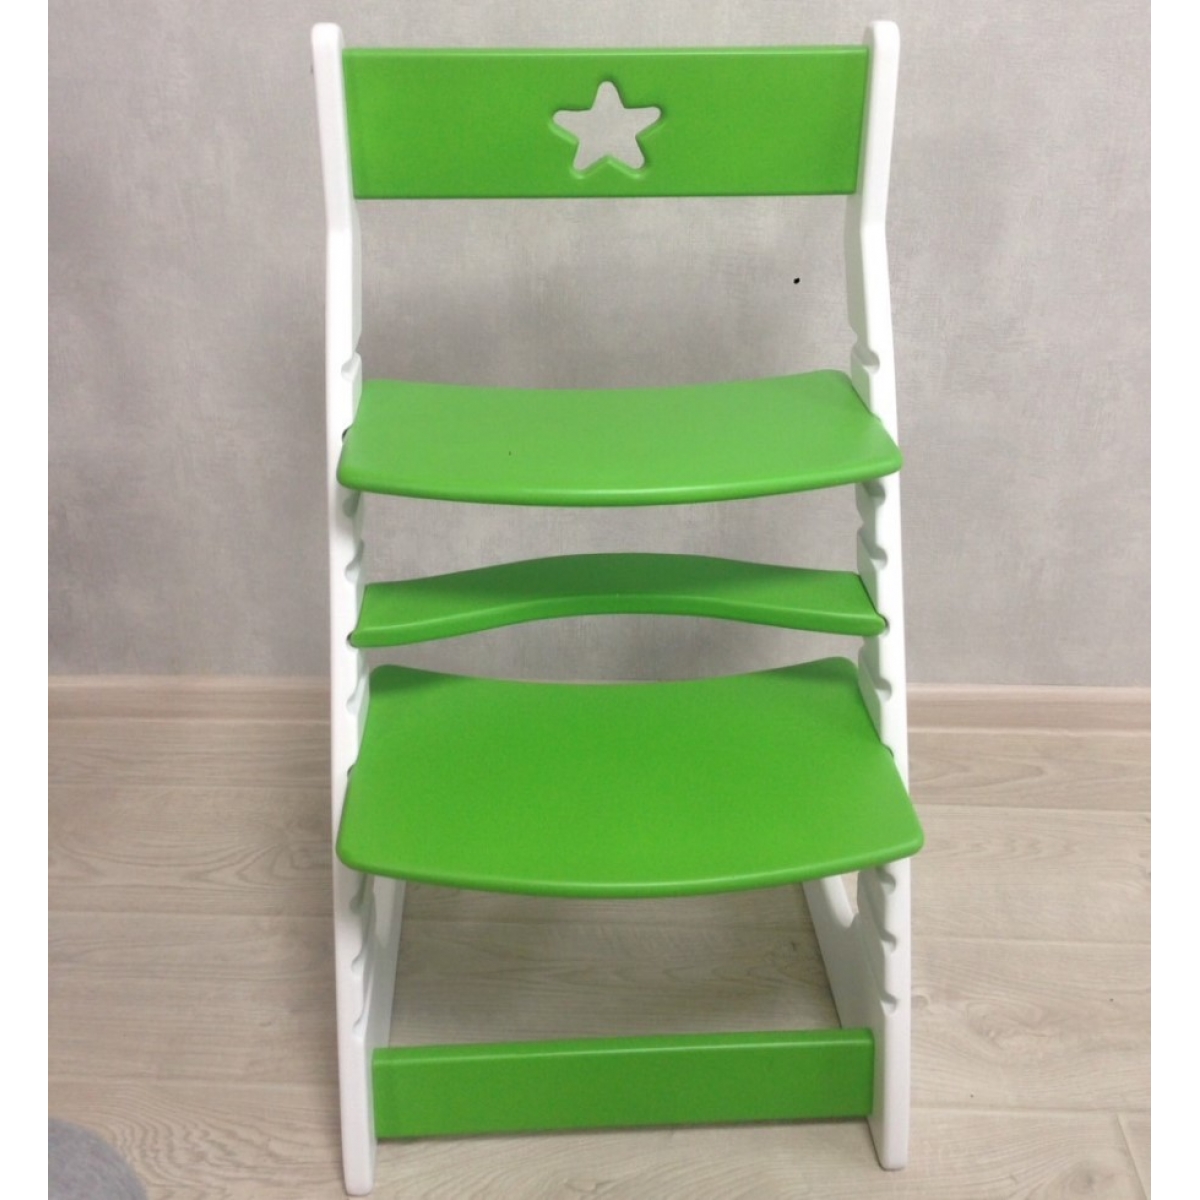 Детский растущий регулируемый стул Ростик/Rostik (зелено-белый)